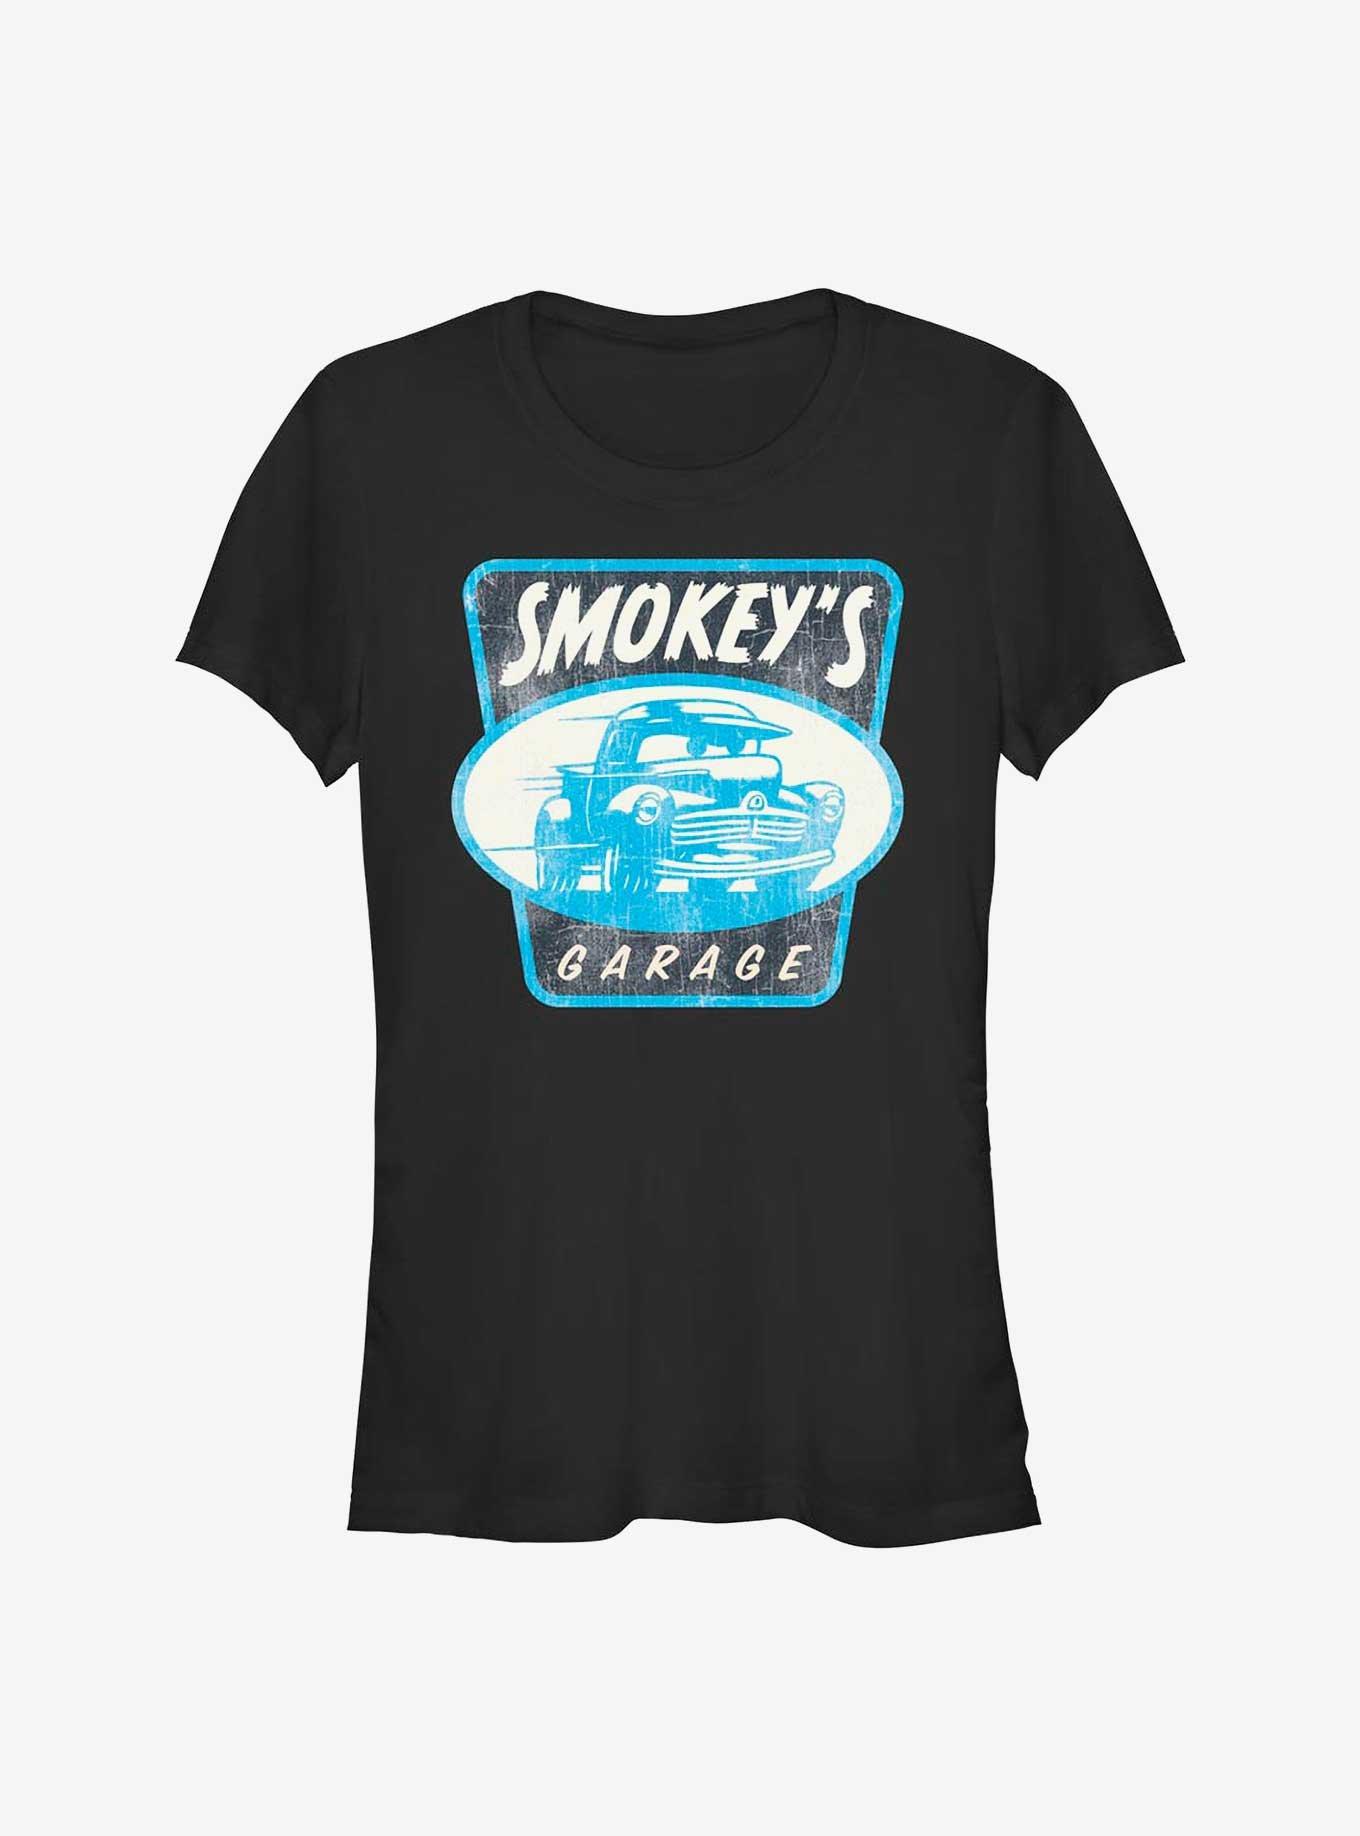 Disney Pixar Cars Smokey's Garage Girls T-Shirt